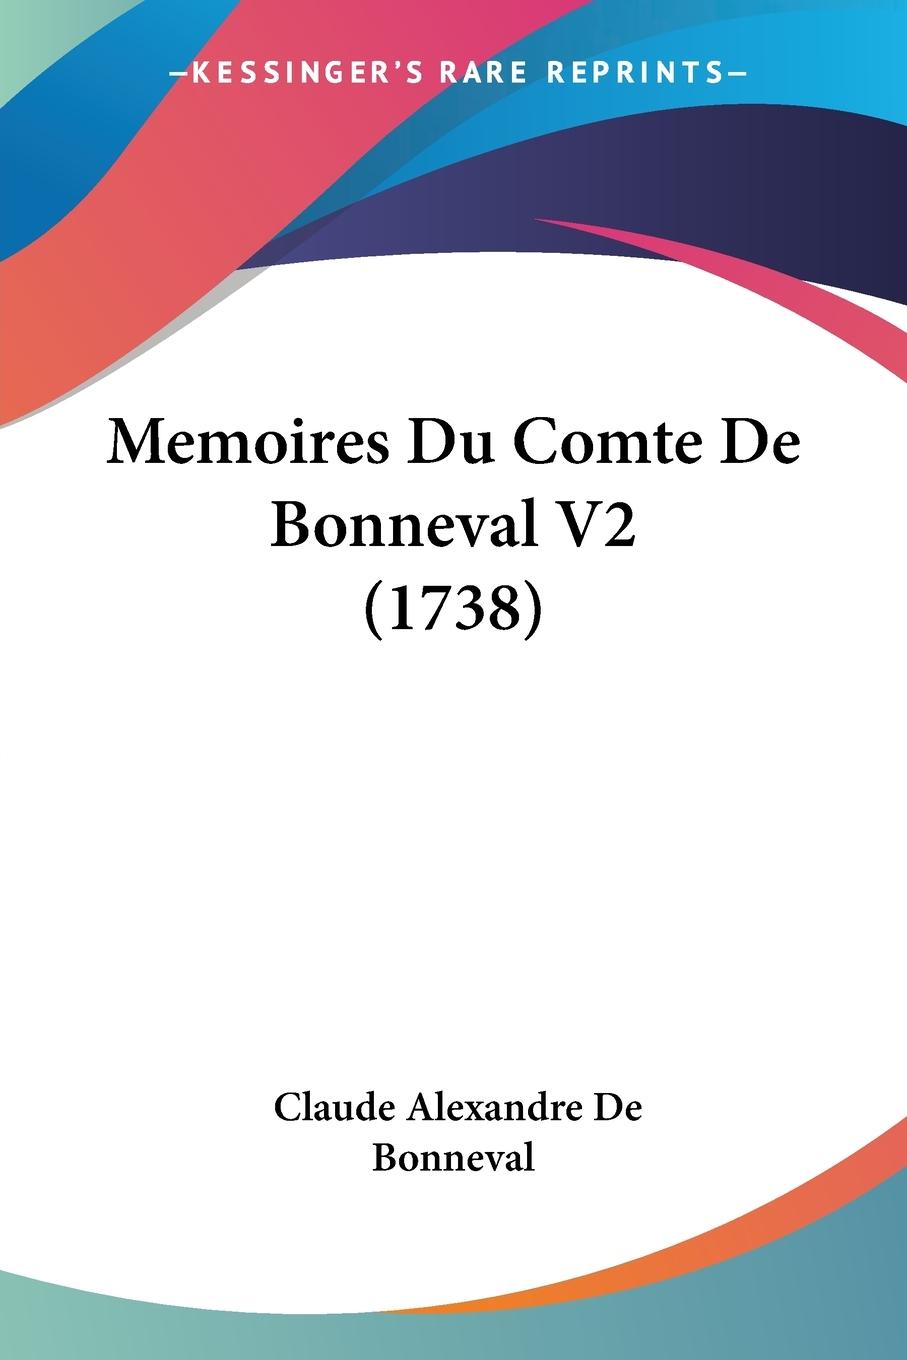 Memoires Du Comte De Bonneval V2 (1738) - Bonneval, Claude Alexandre De